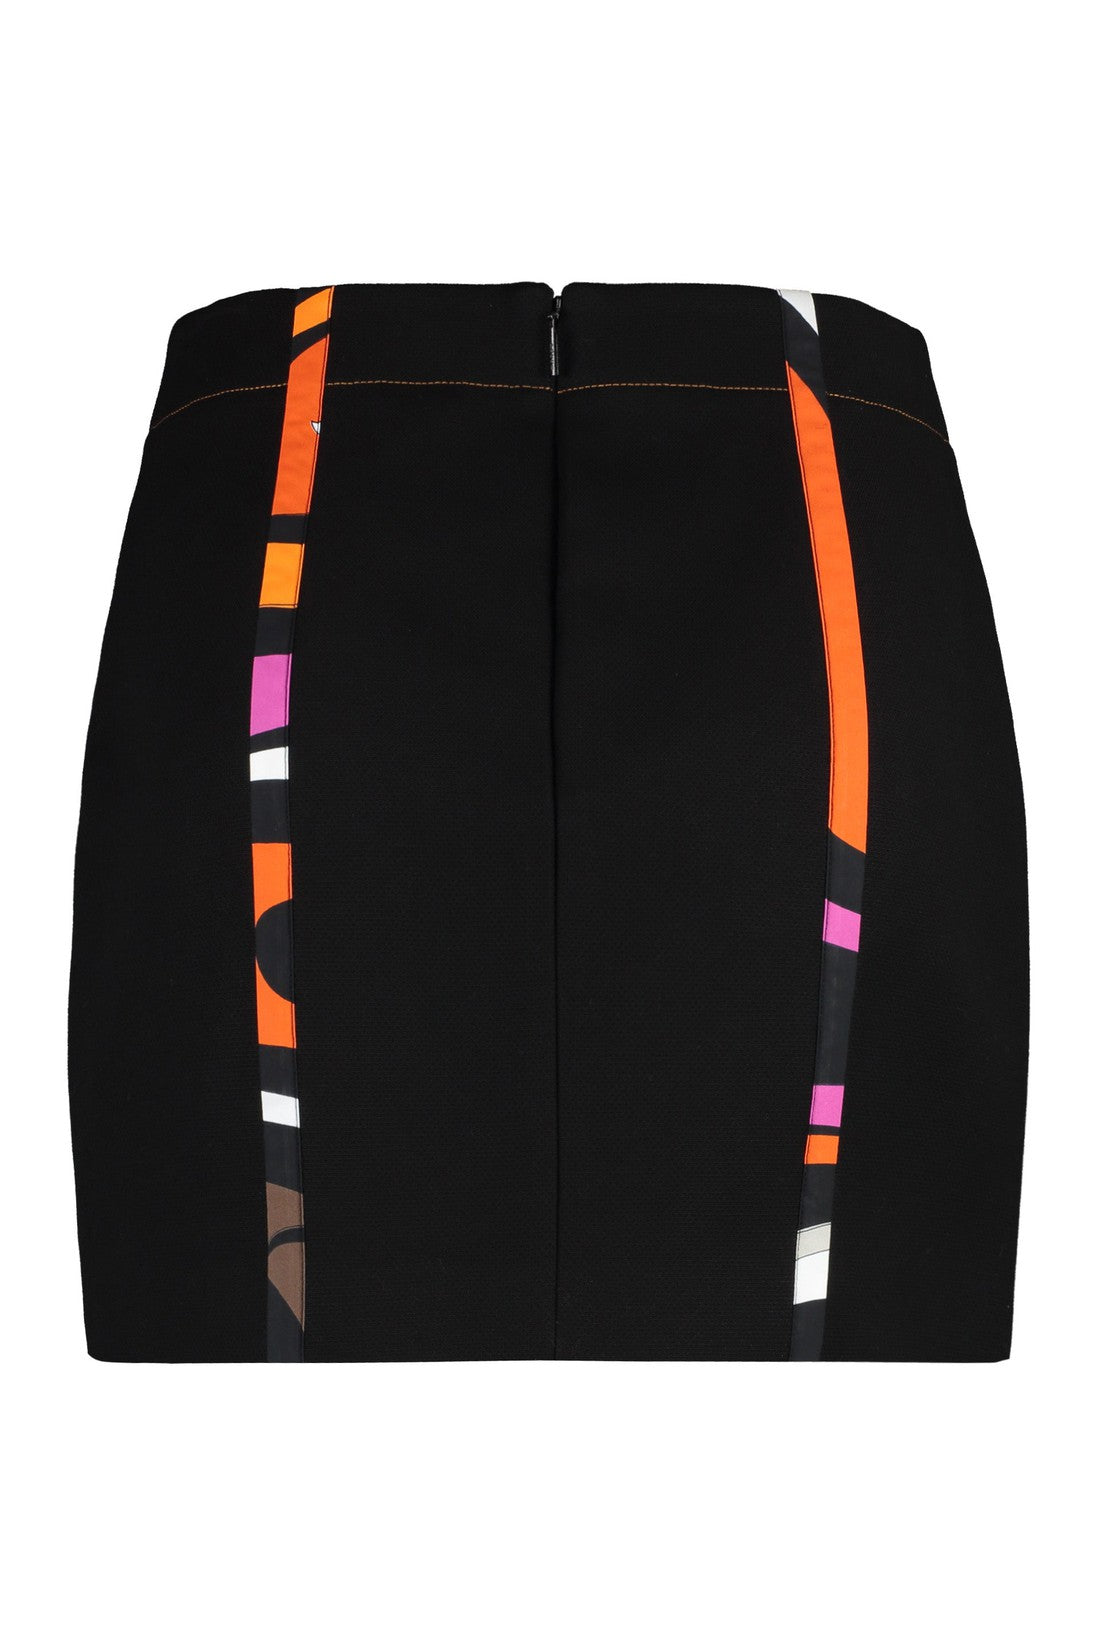 PUCCI-OUTLET-SALE-Cotton mini-skirt-ARCHIVIST